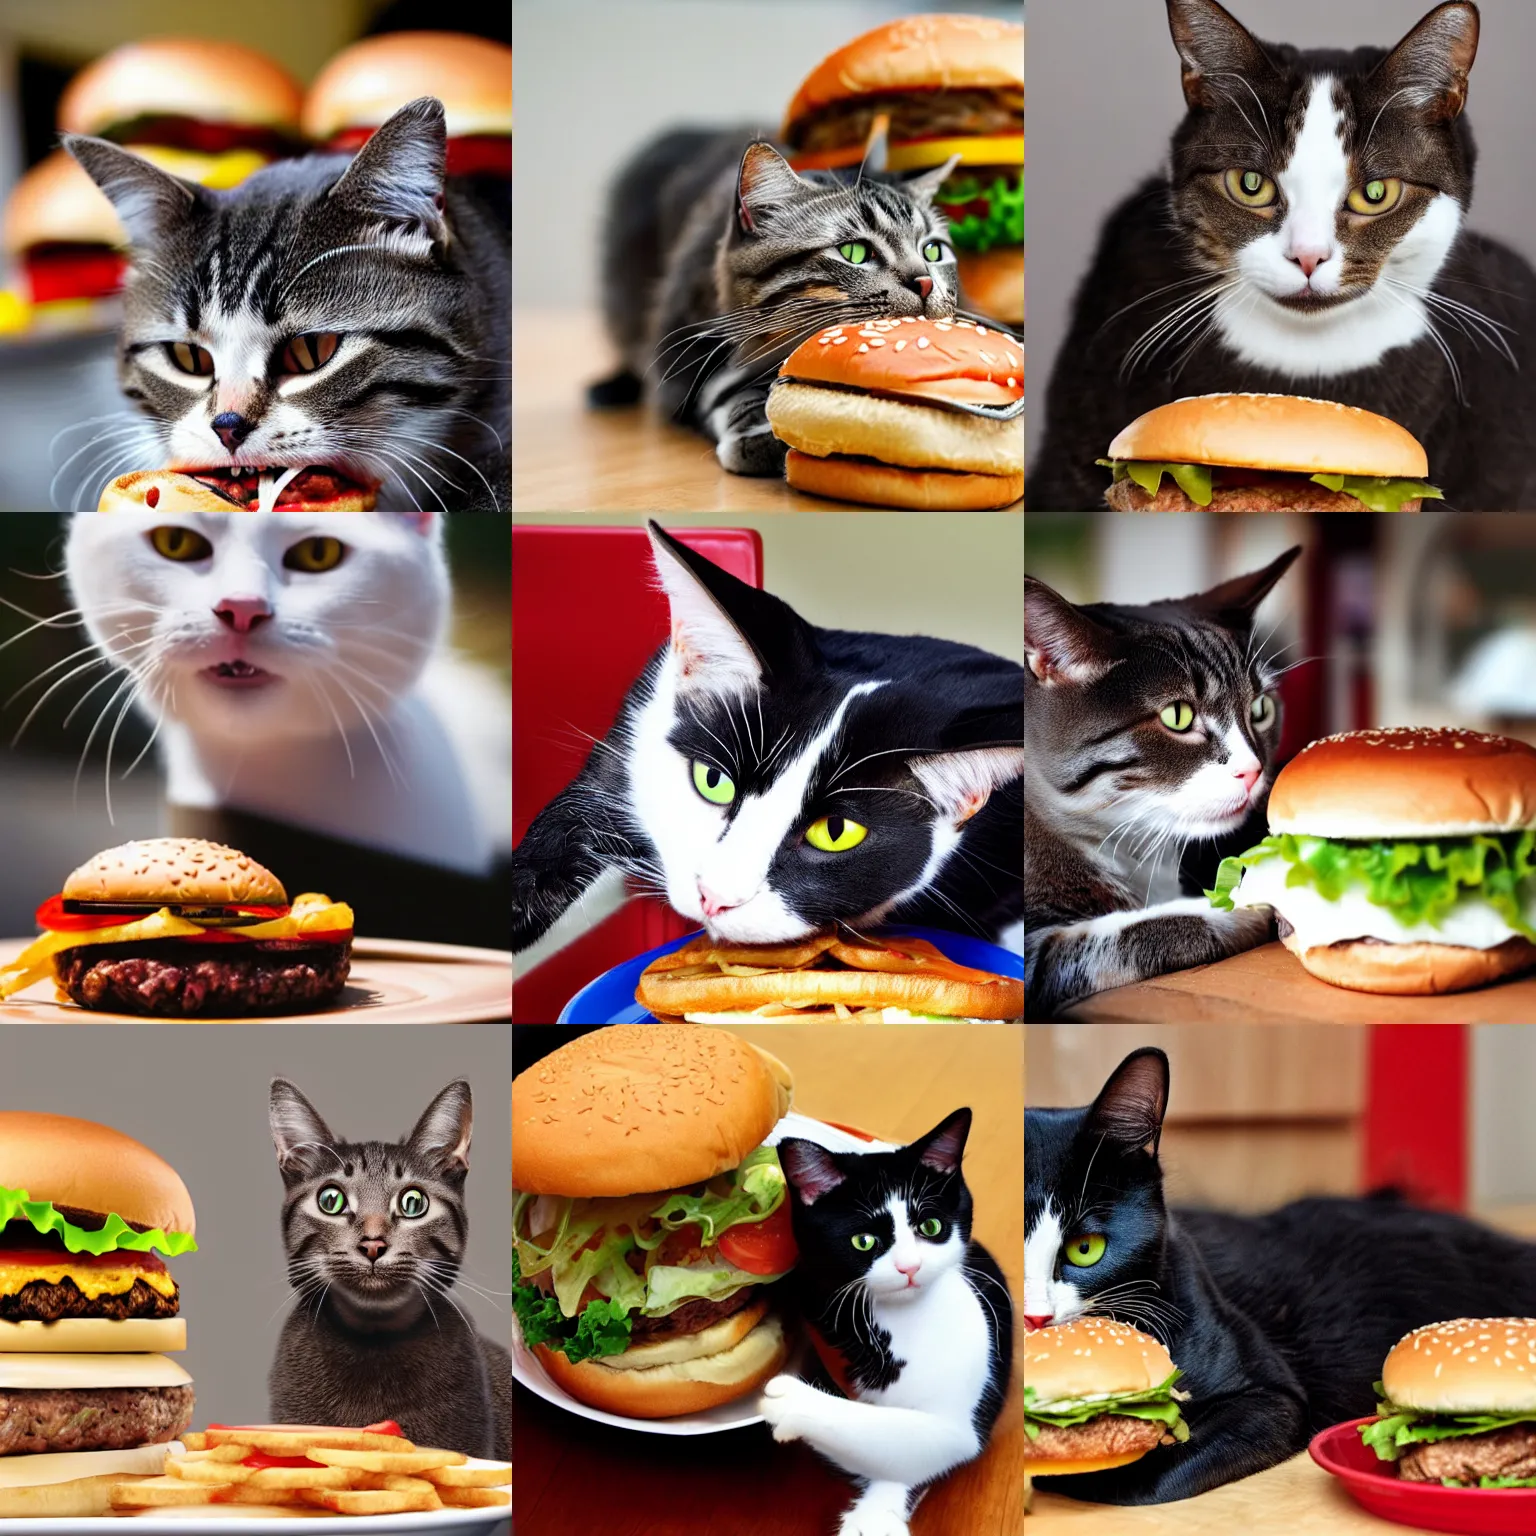 Prompt: a cat eating hamburger